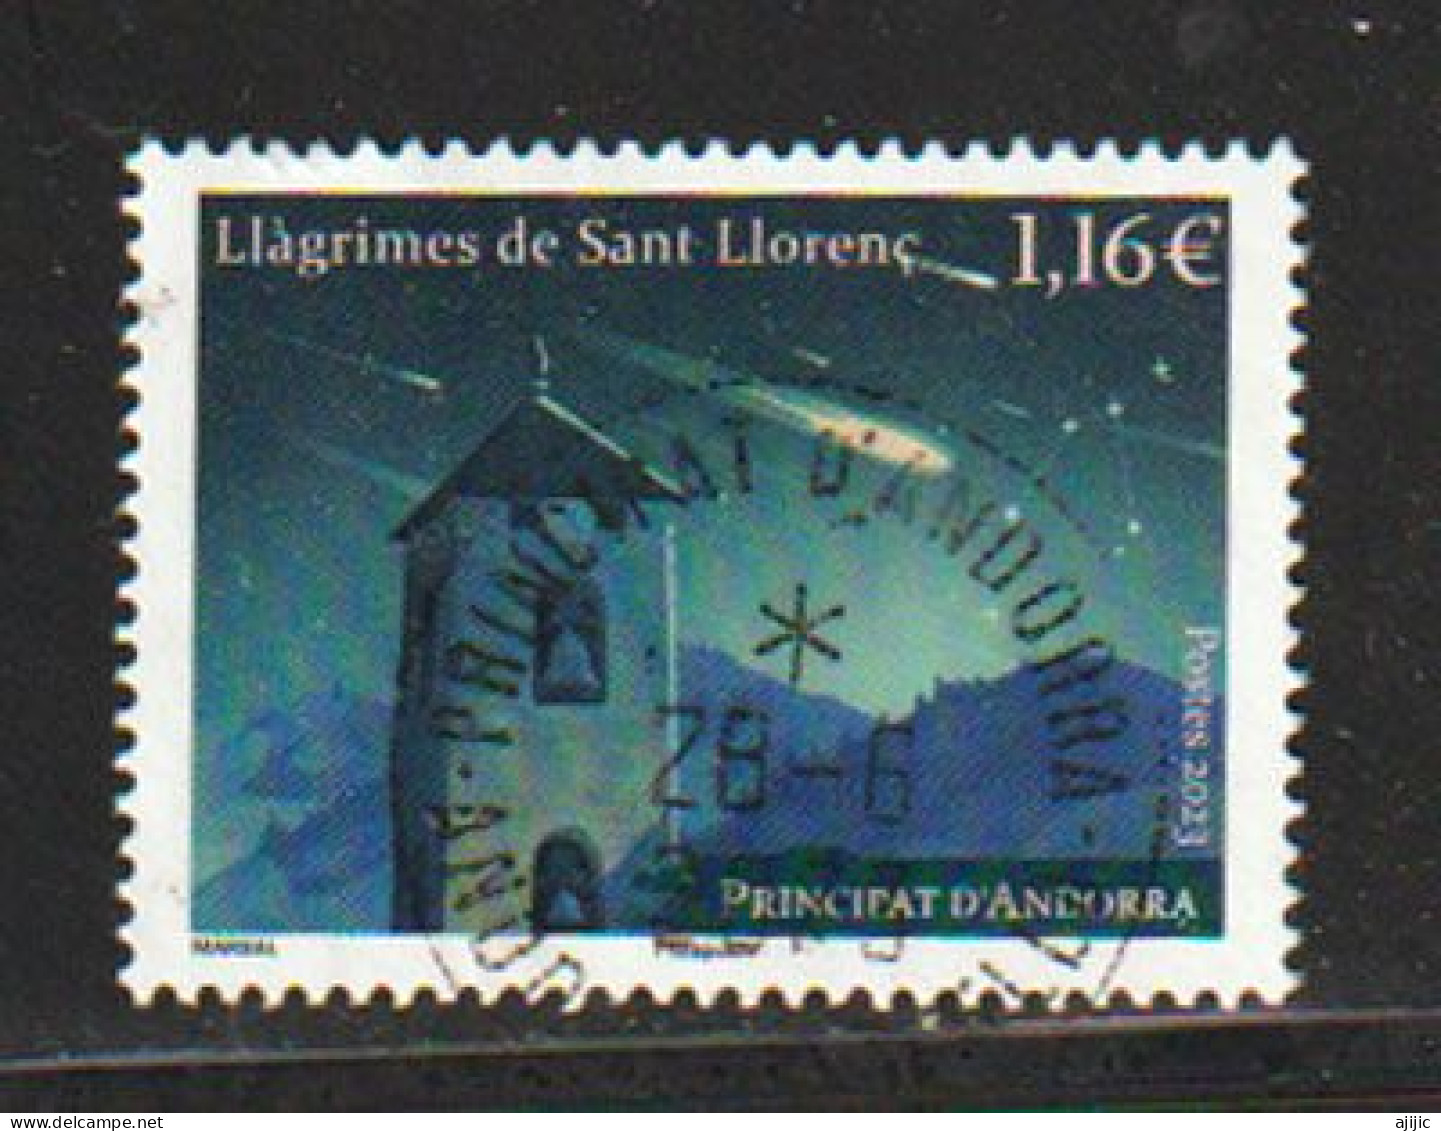 ANDORRA.. Llagrimes De Sant Llorenc (Espectacular Lluvia De Estrellas Nocturna) Perseidas. Sello Cancelado 1ª Calidad - Usati